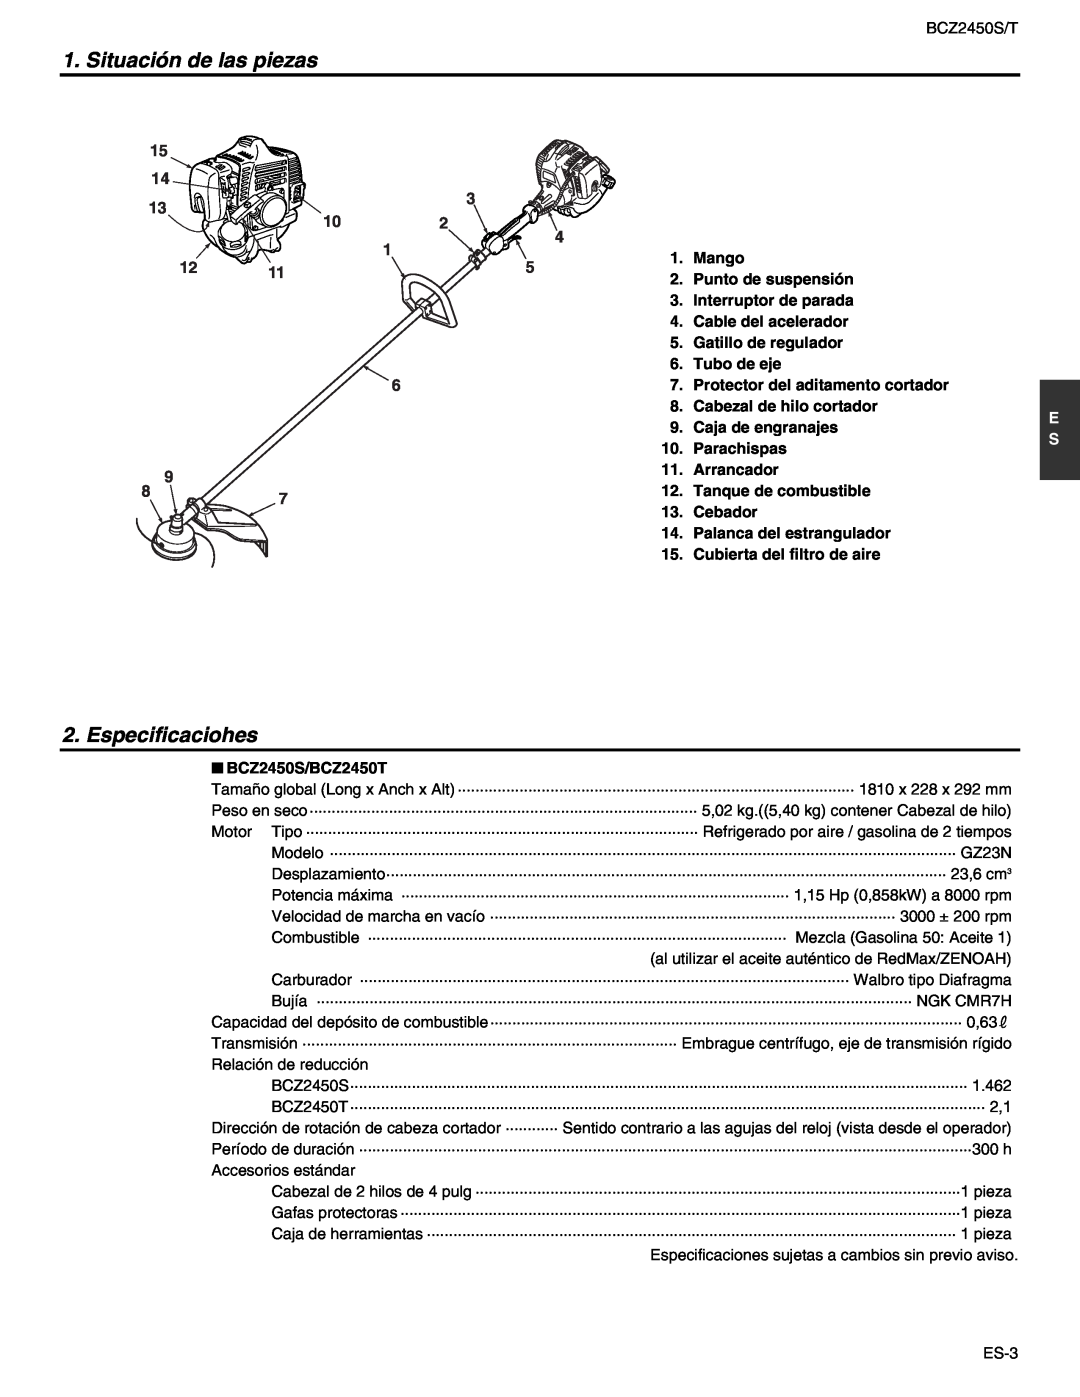 RedMax BCZ2450S, BCZ2450T manual Situación de las piezas, Especificaciohes 